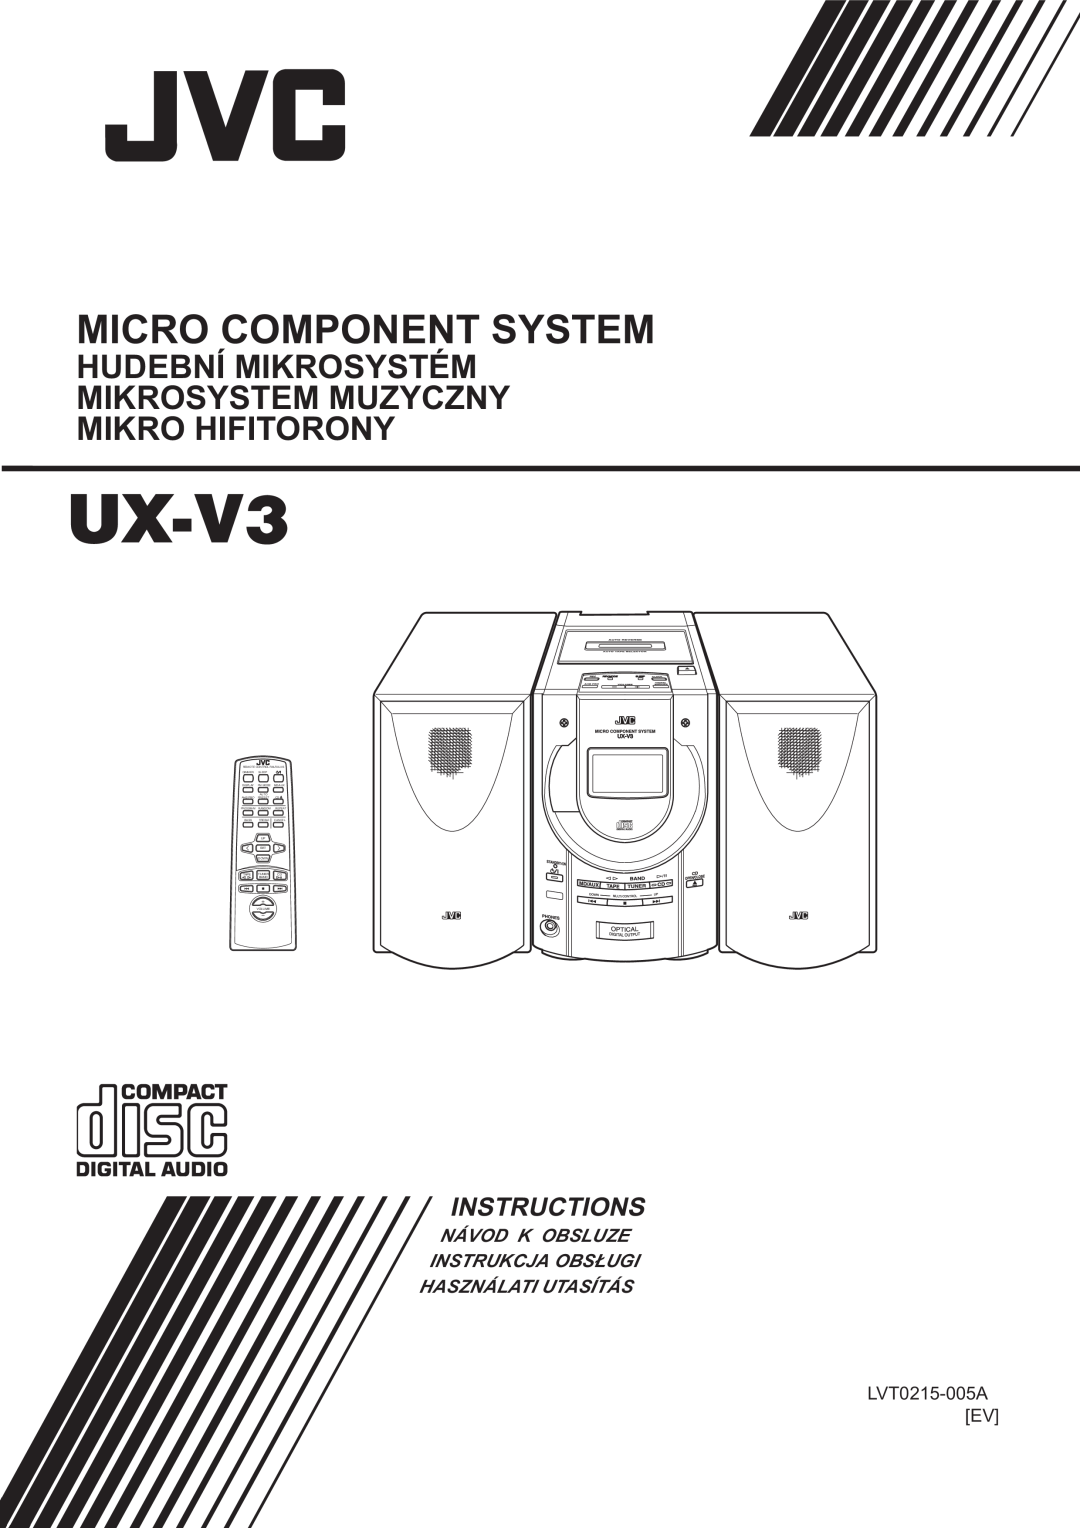 JVC UX-V3R manual LVT0215-005AEV, Micro Component System, Instructions, Návod K Obsluze Instrukcja Obs£Ugi 